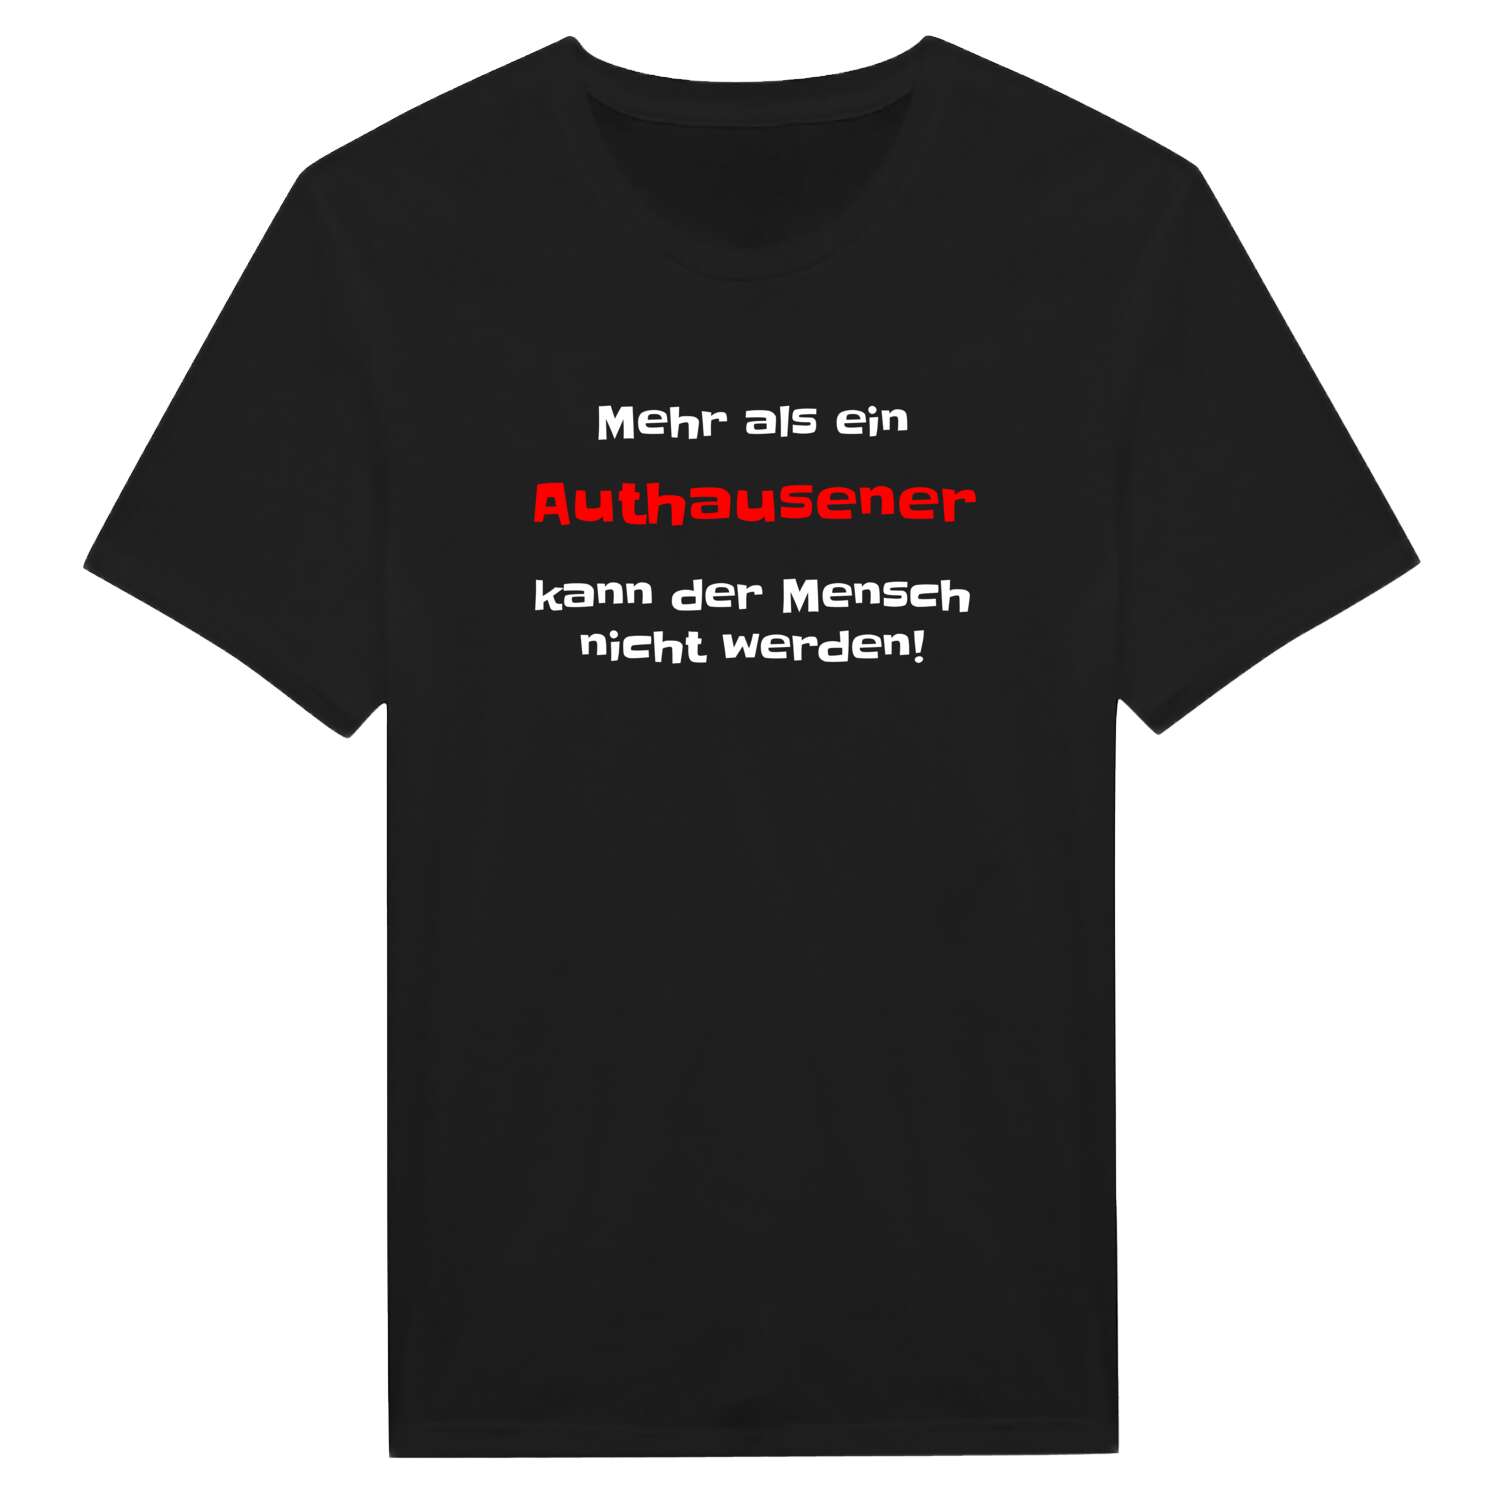 Authausen T-Shirt »Mehr als ein«